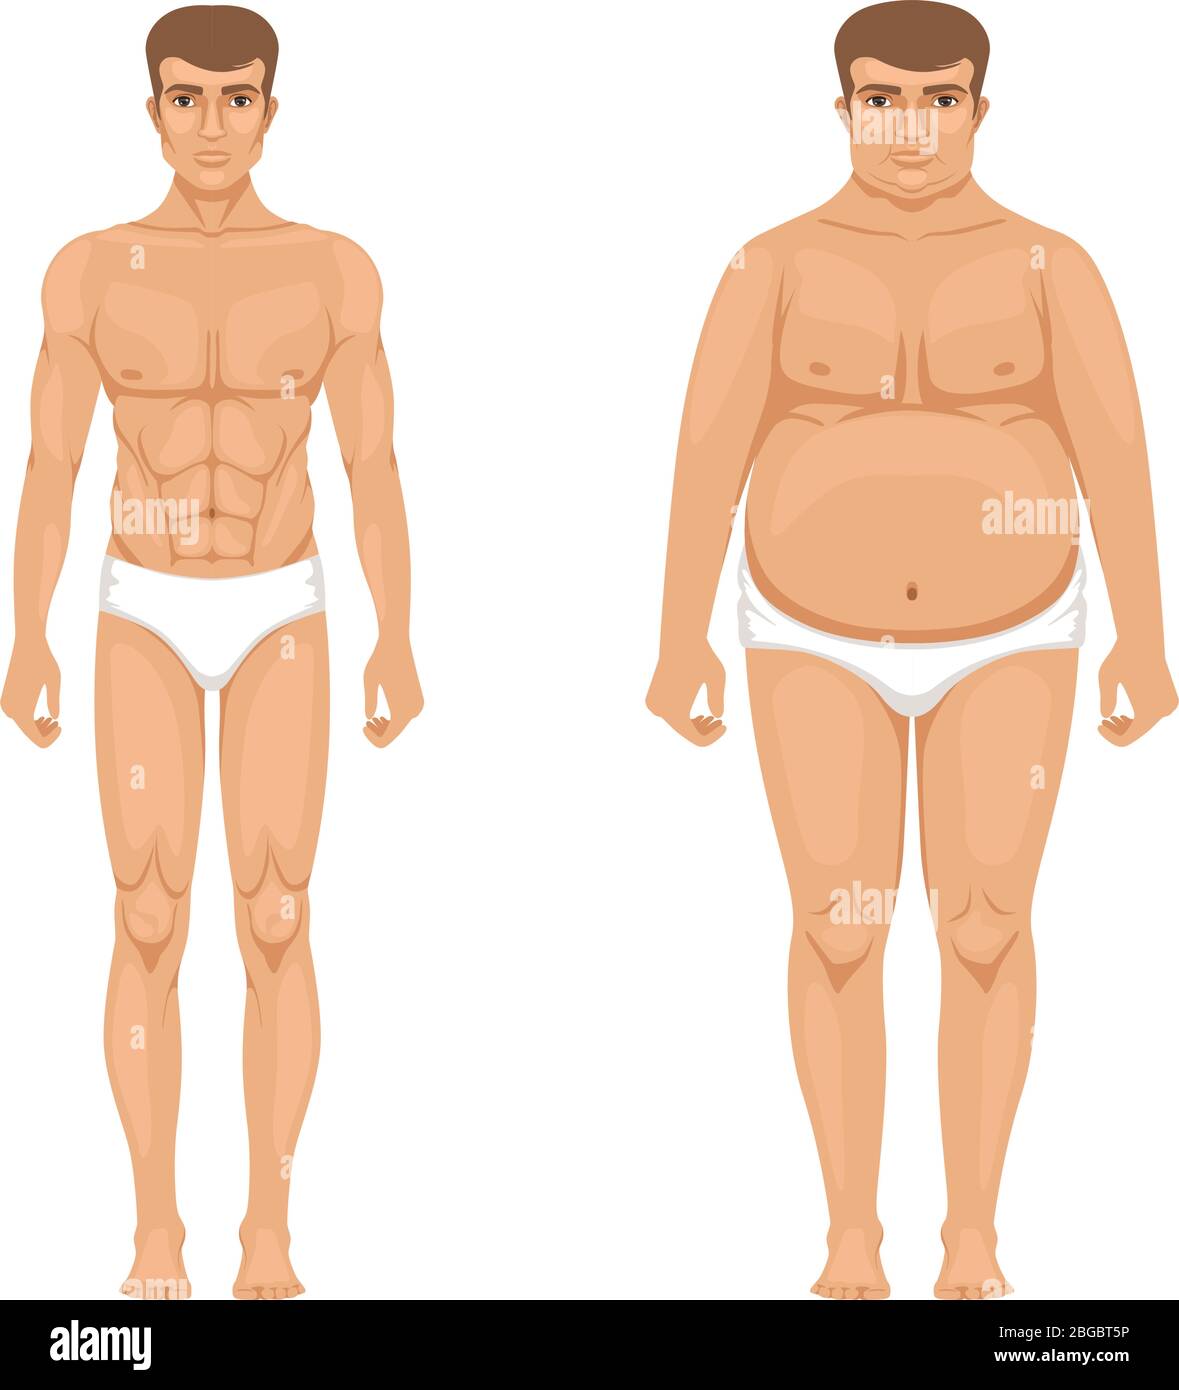 Visualisation de la perte de poids. Homme musclé et gros. Illustration vectorielle du style de vie Illustration de Vecteur